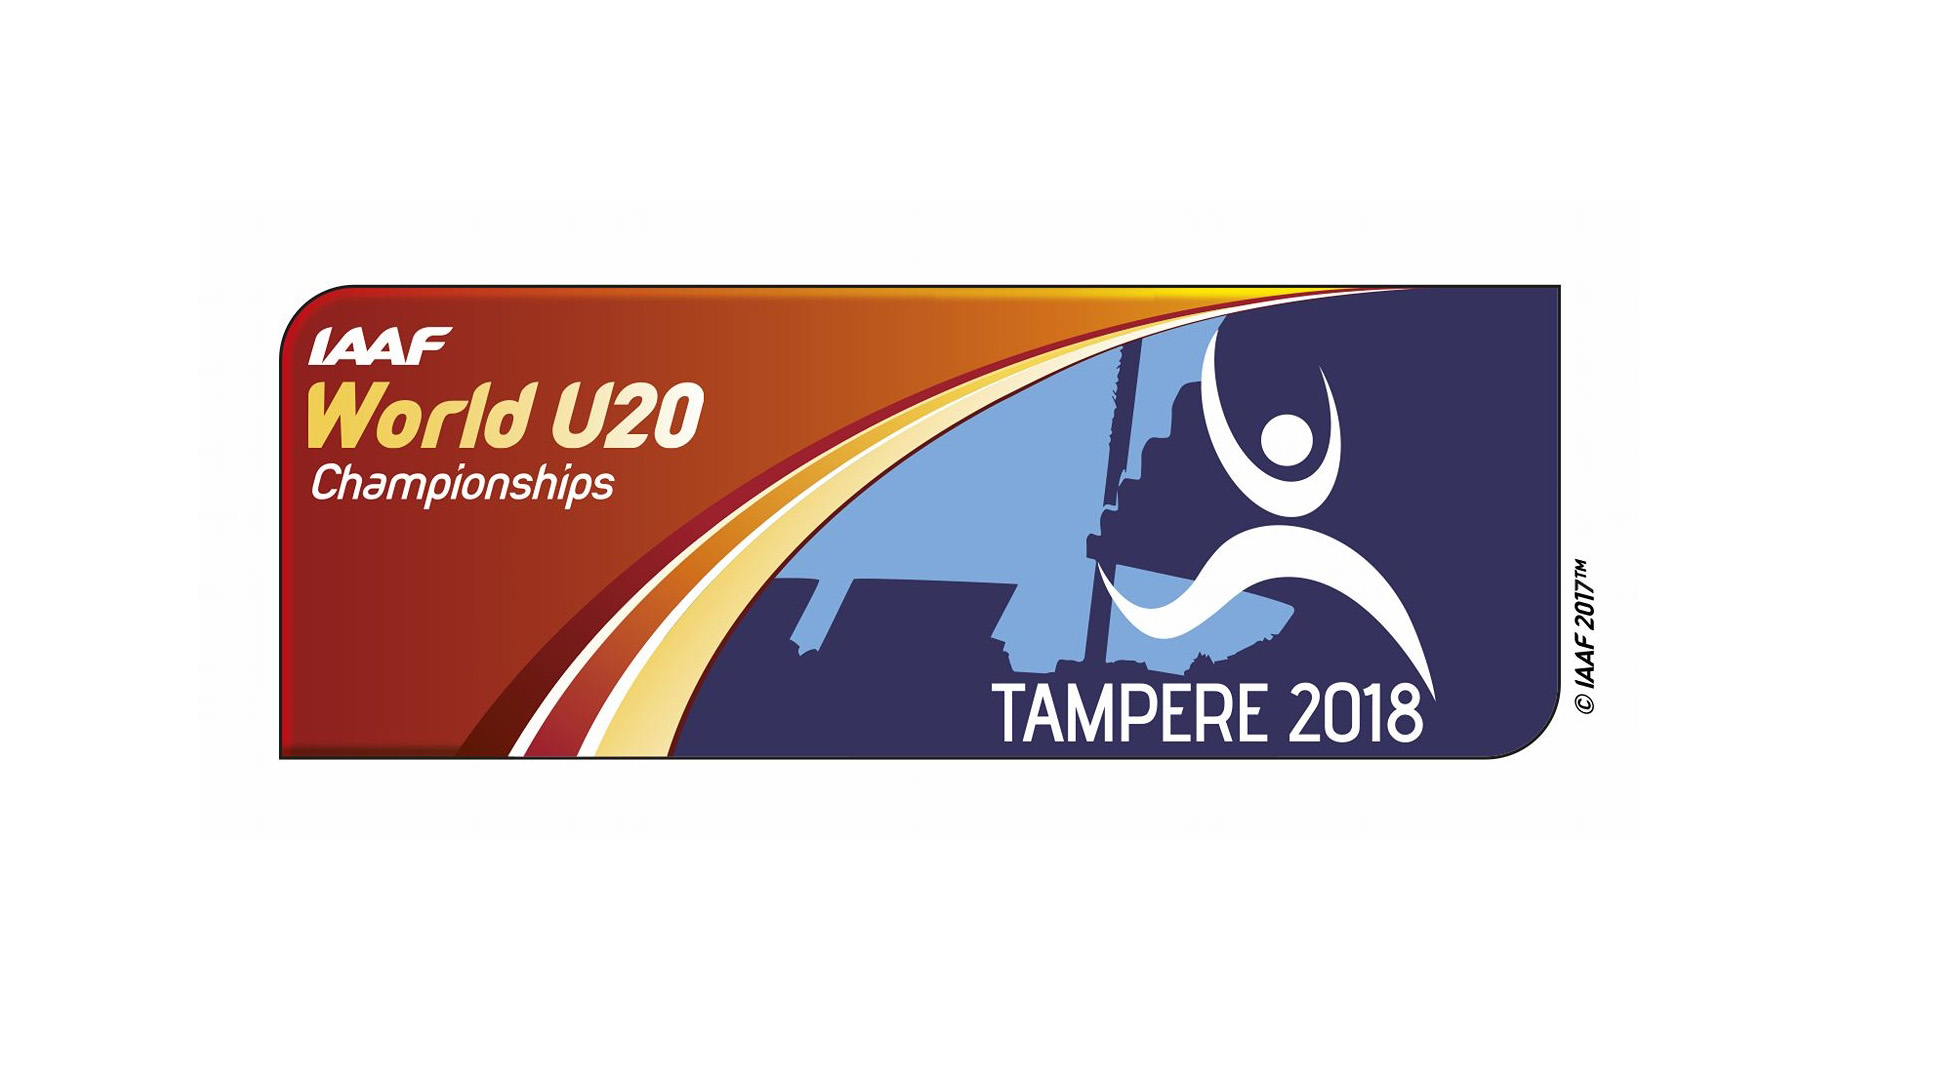 Campionati del Mondo U20 2018 Tampere